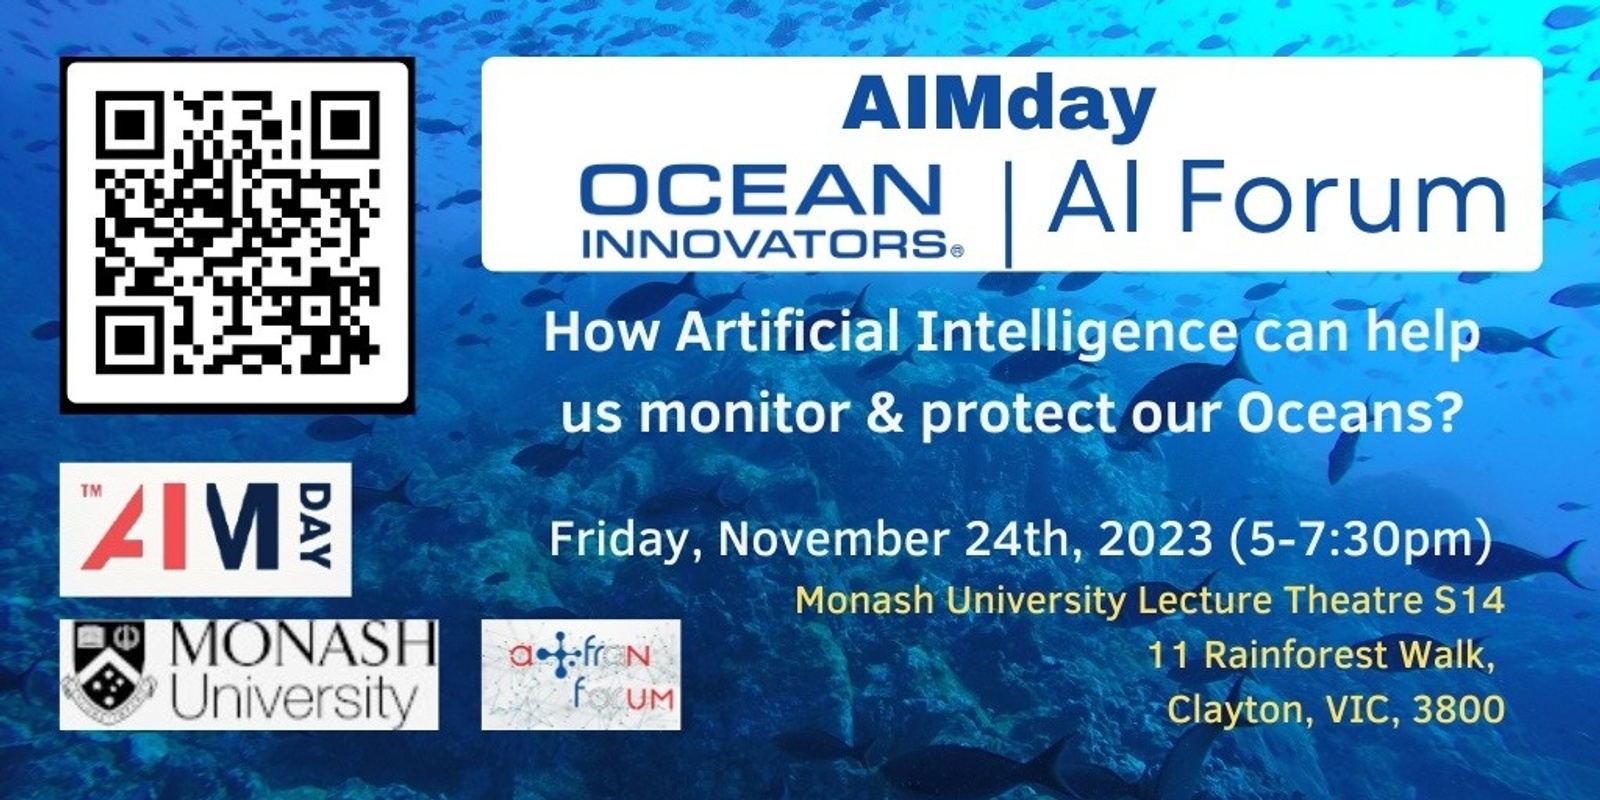 Banner image for Ocean Innovators event - Focus on AI Workshop in Melbourne